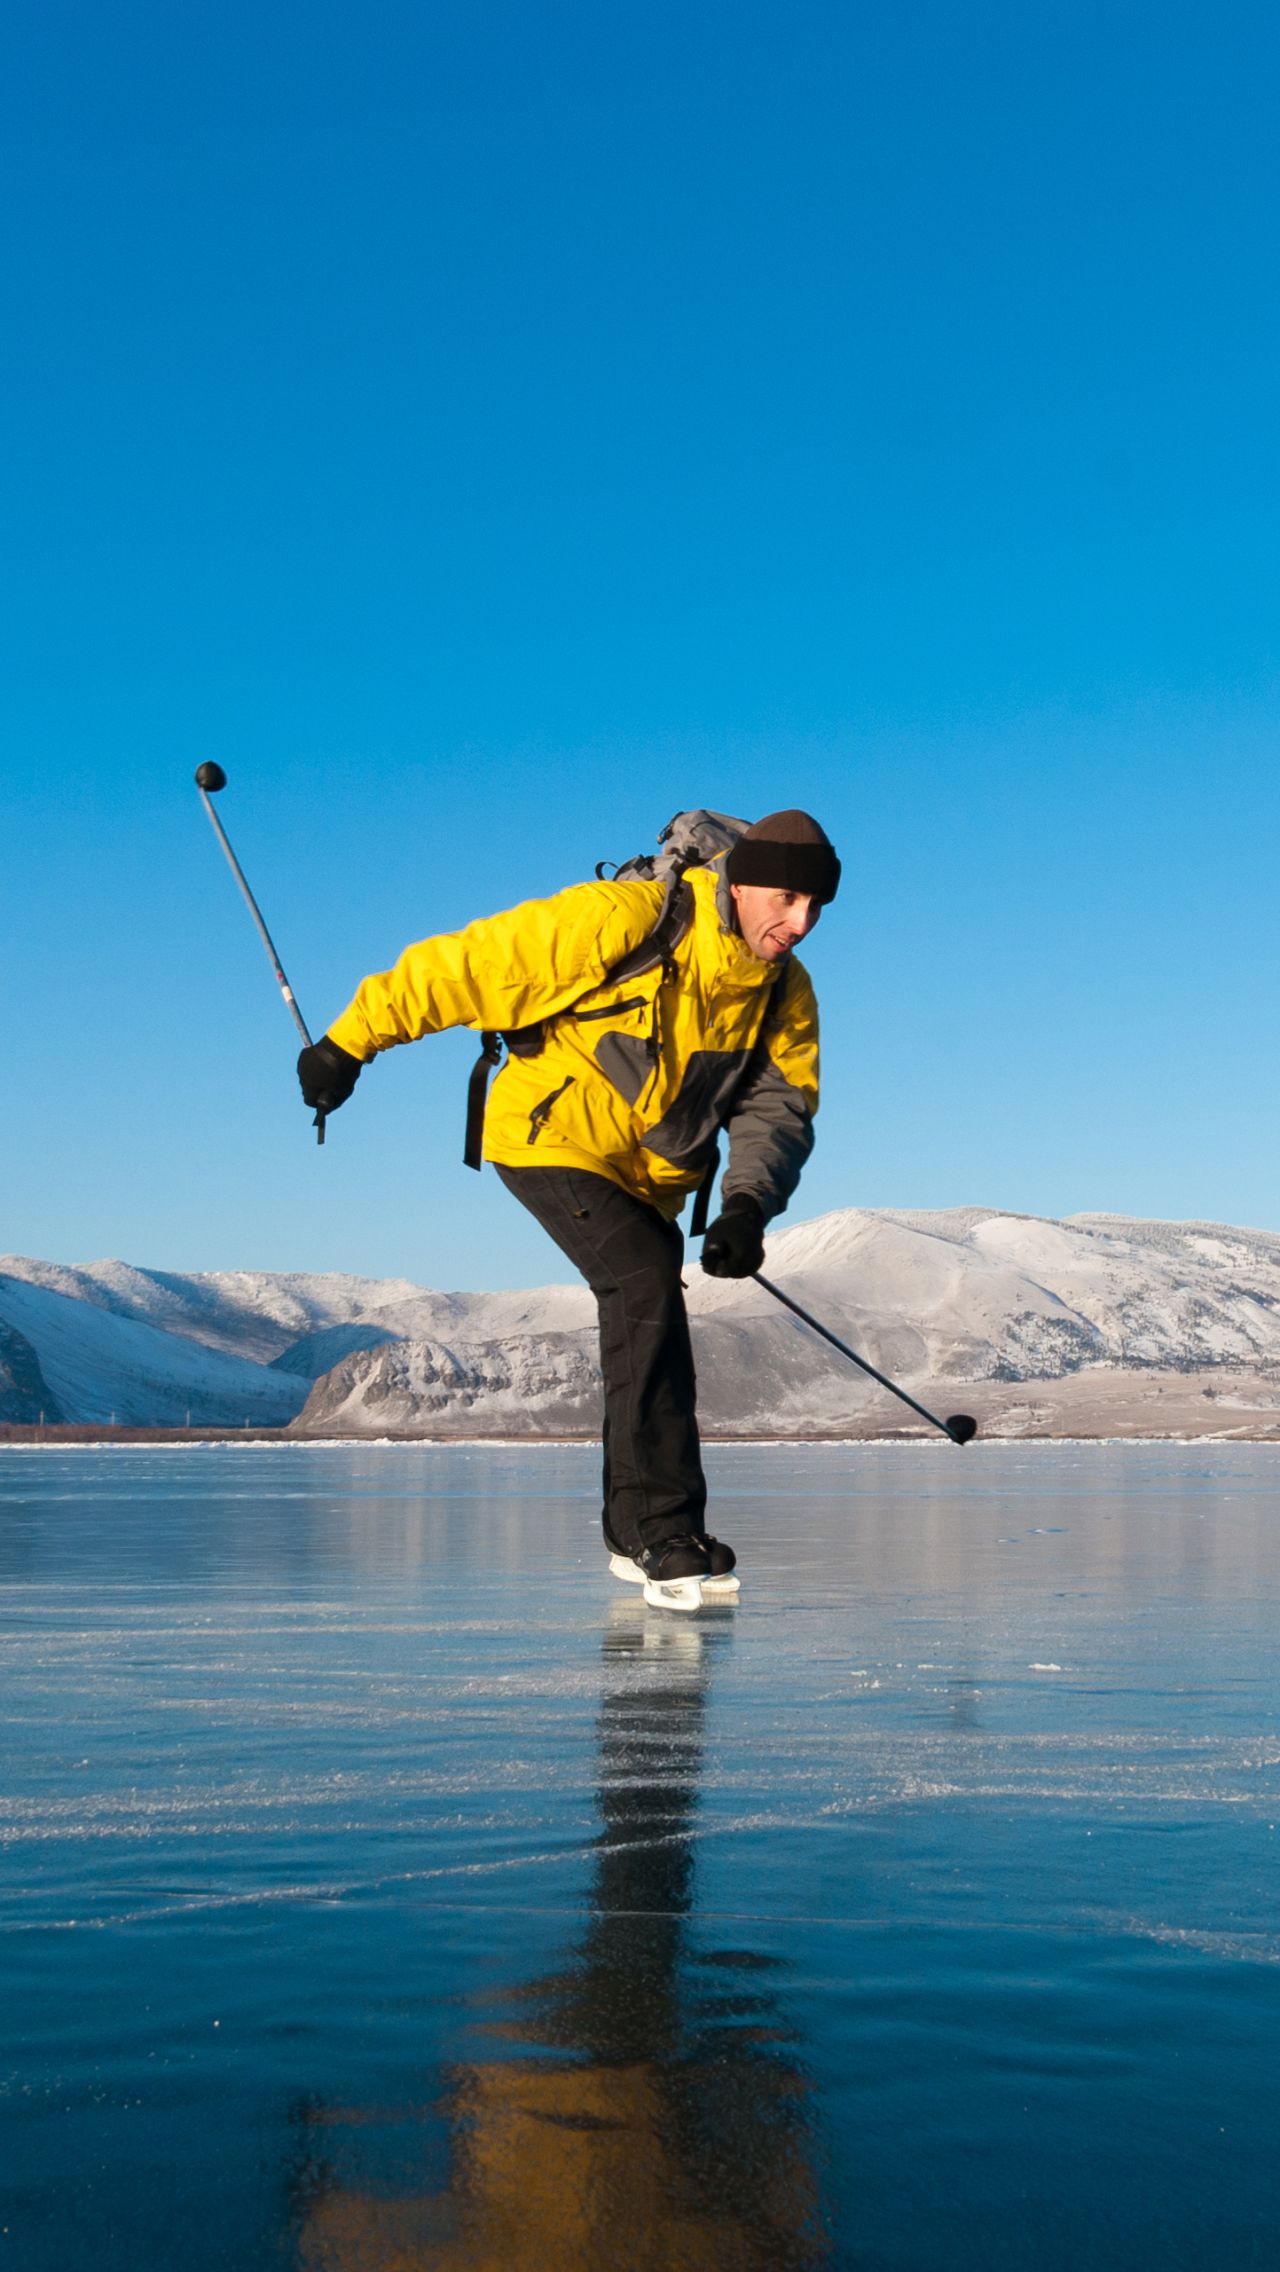 Энергичный танец на коньках по ледяному озеру. Пластичности этого парня позавидуют многие!